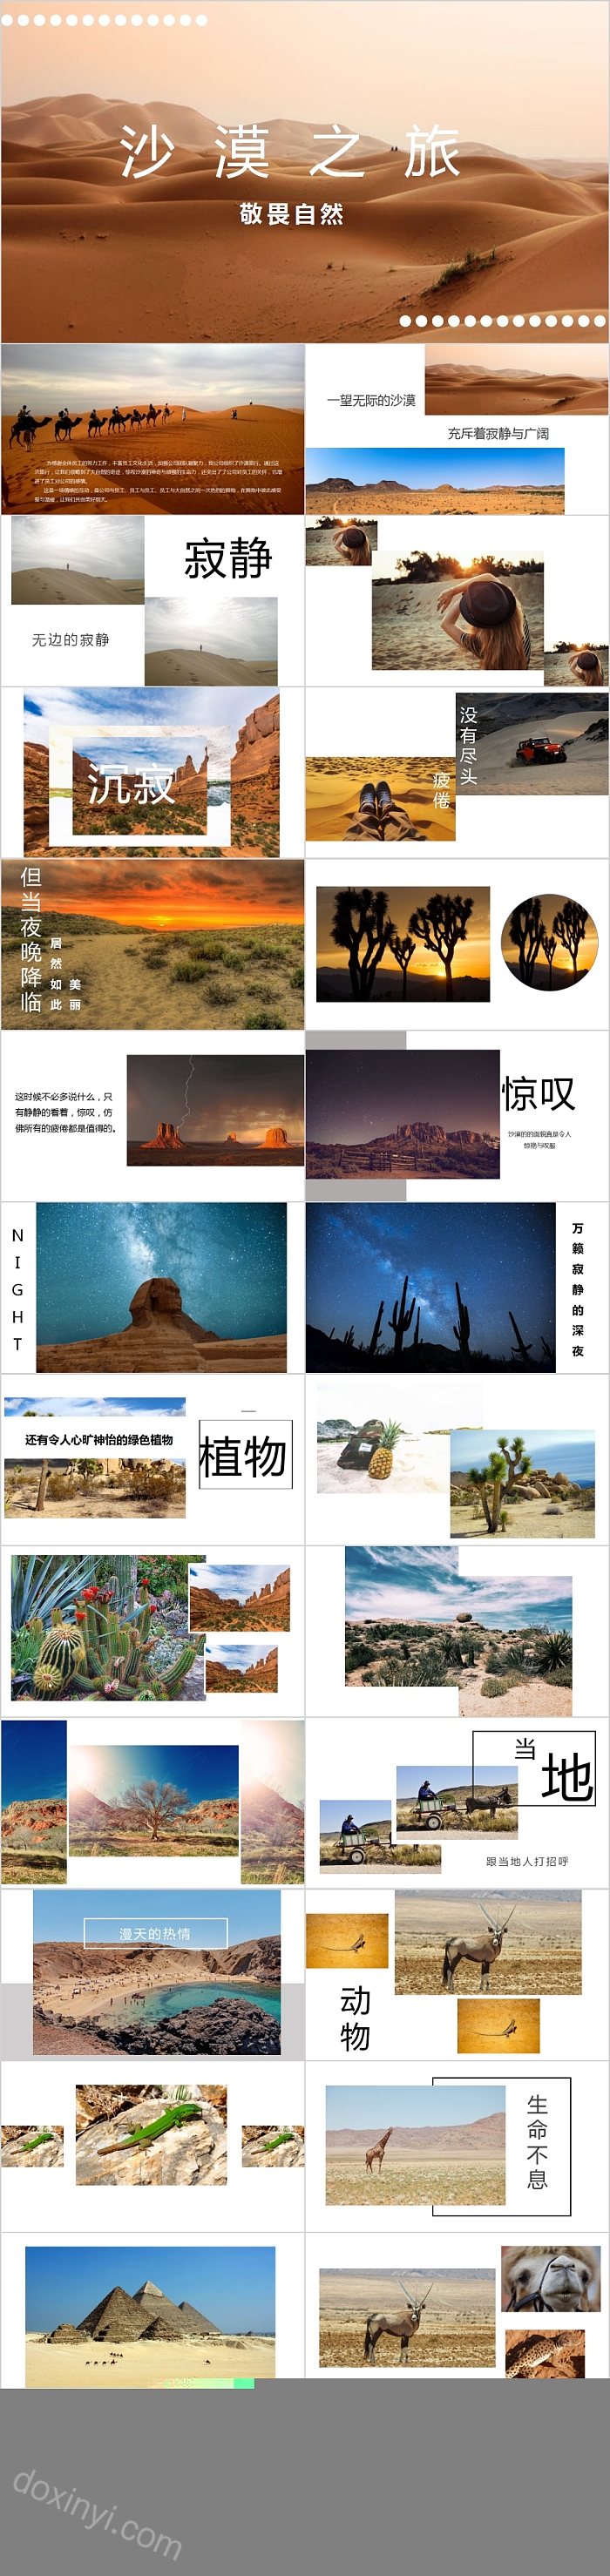 沙漠之旅敬畏自然旅游相册旅游摄影电子相册PPT